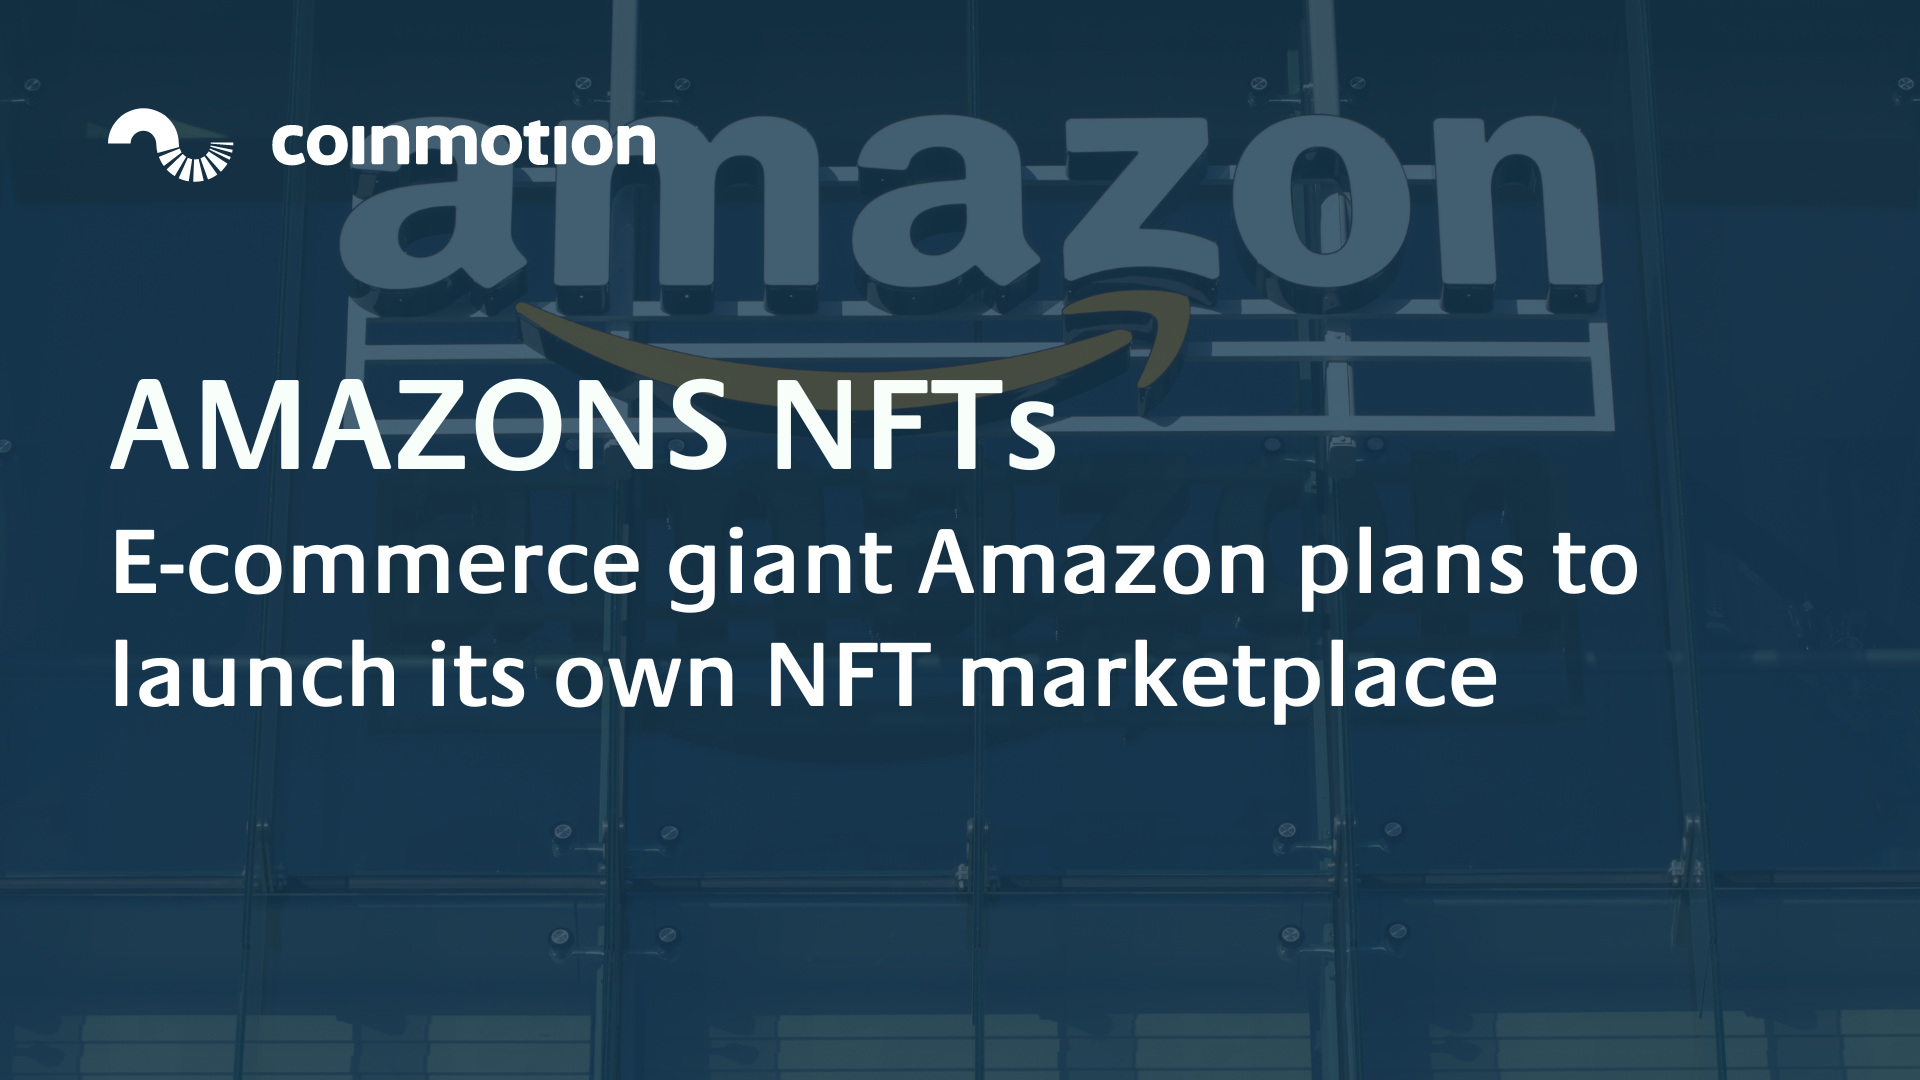 Amazon NFT